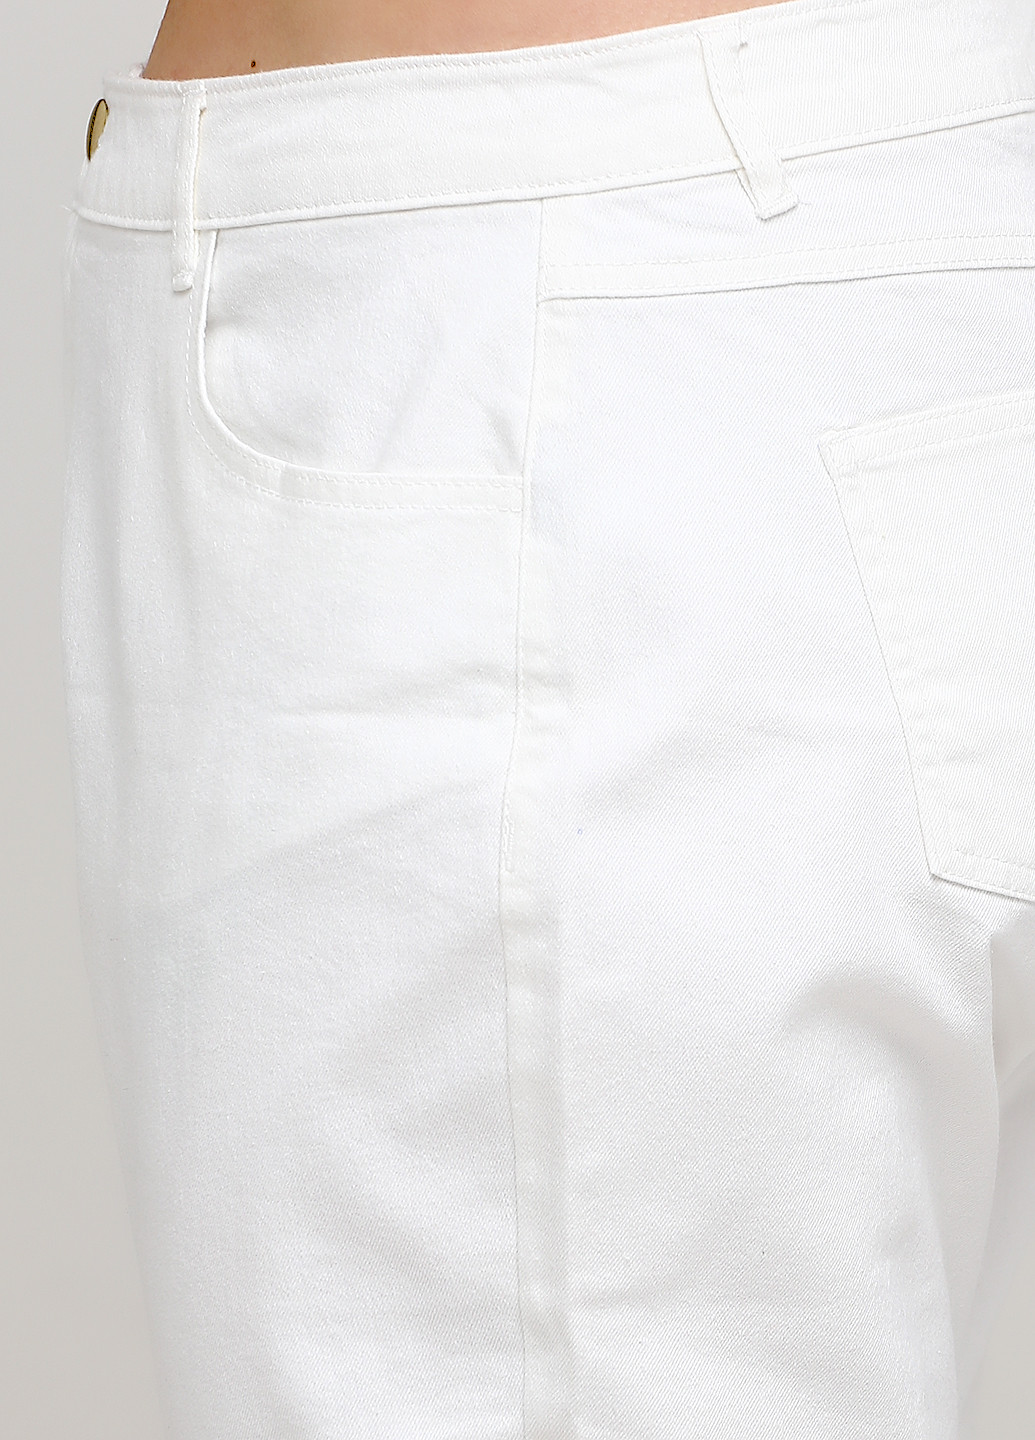 Капри Avon однотонные молочные джинсовые хлопок